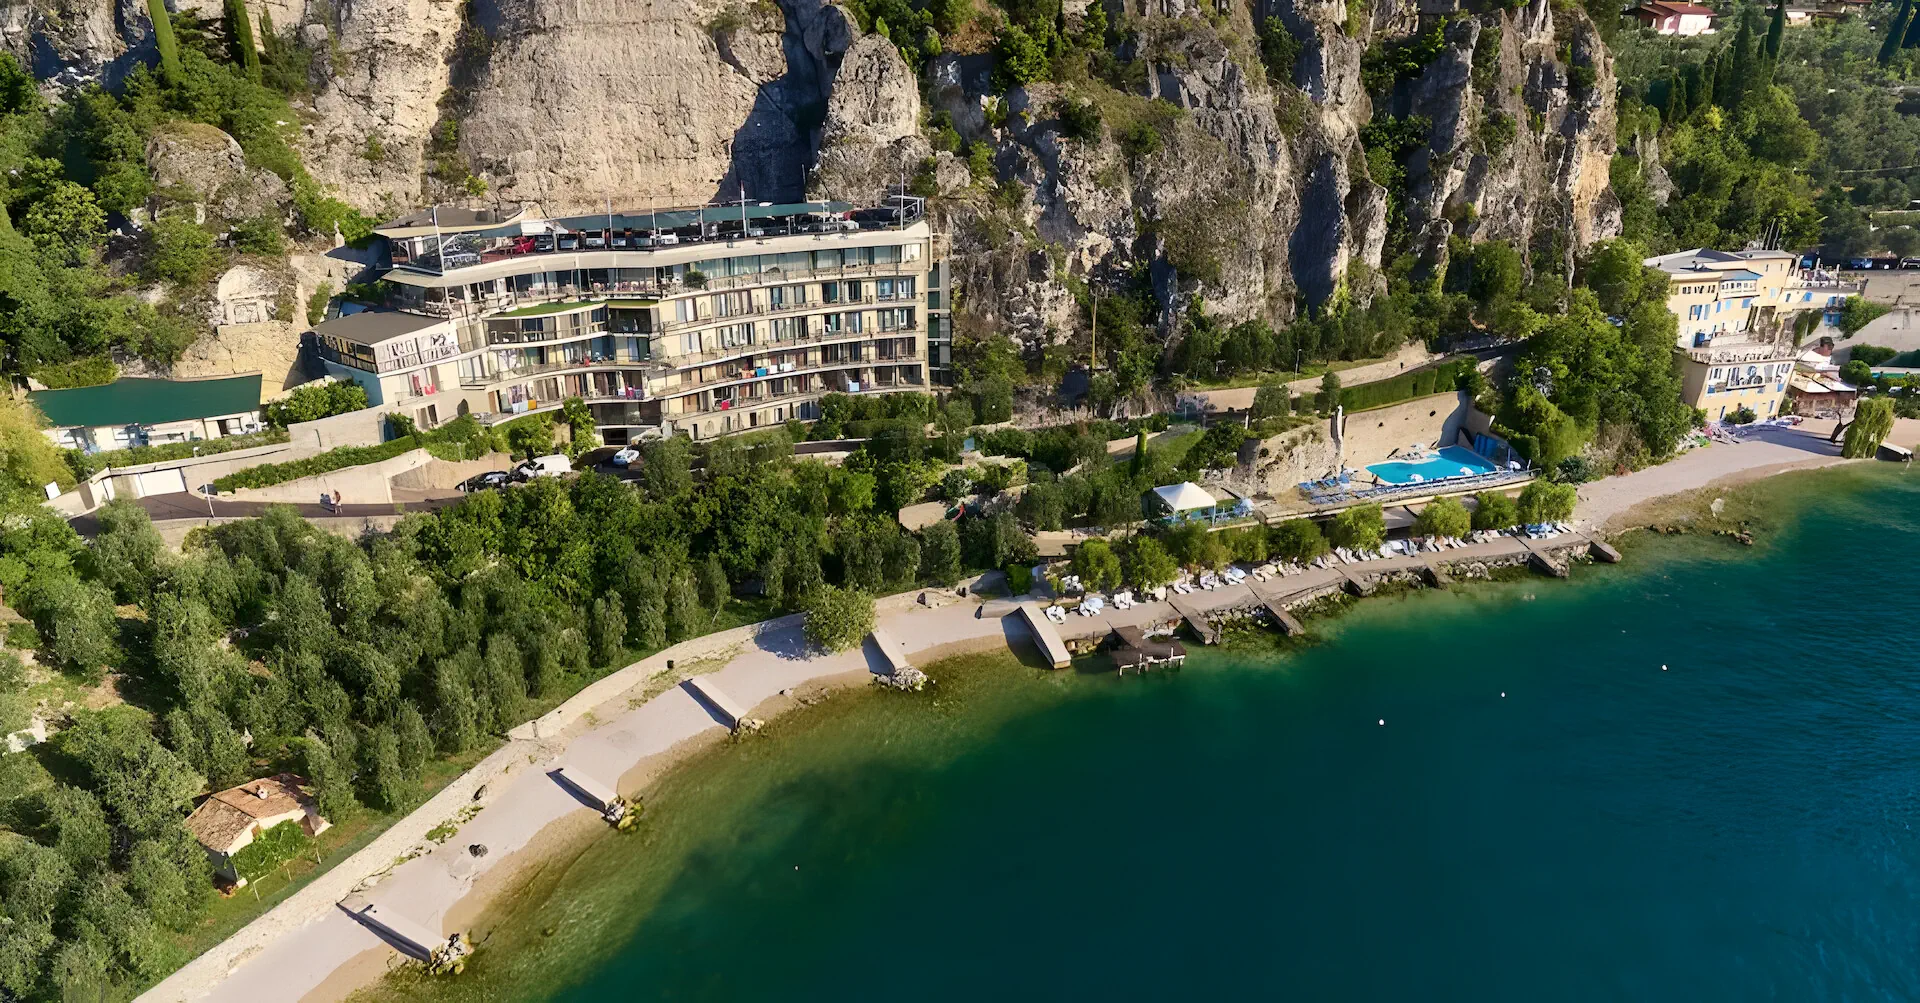 Włochy Jezioro Garda Limone sul Garda Astor Hotel